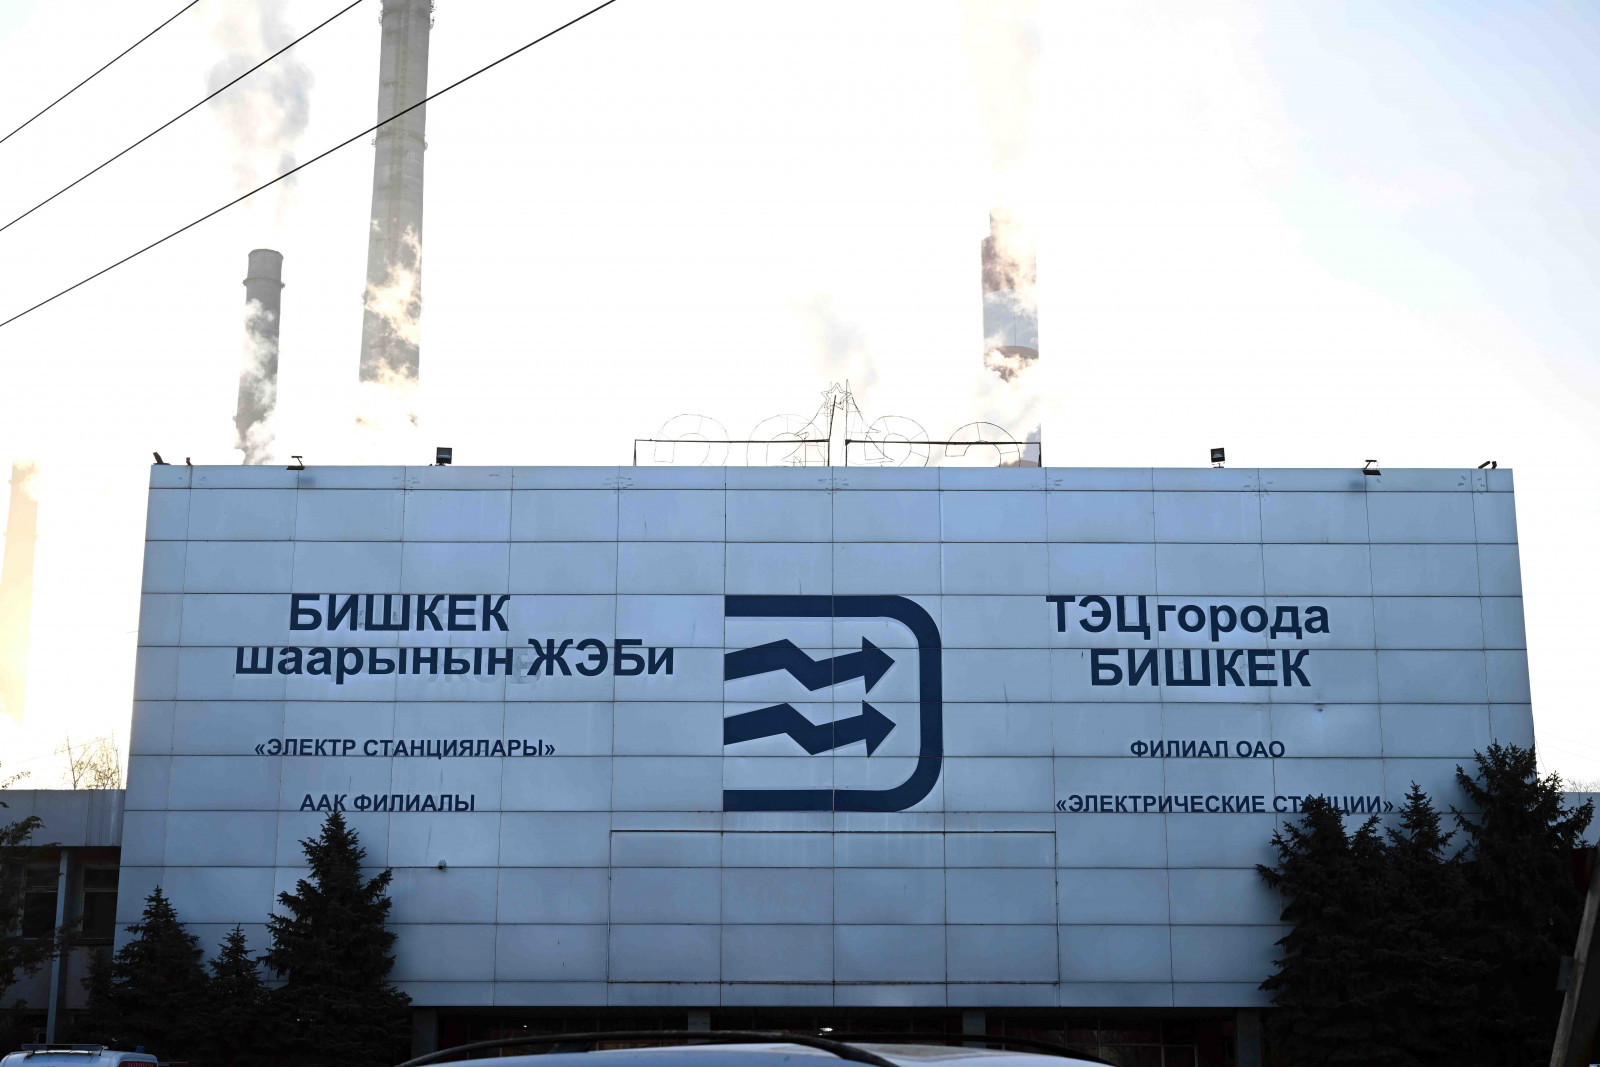 Минфину передали имущественные комплексы ТЭЦ Бишкека и "Бишкектеплосеть"